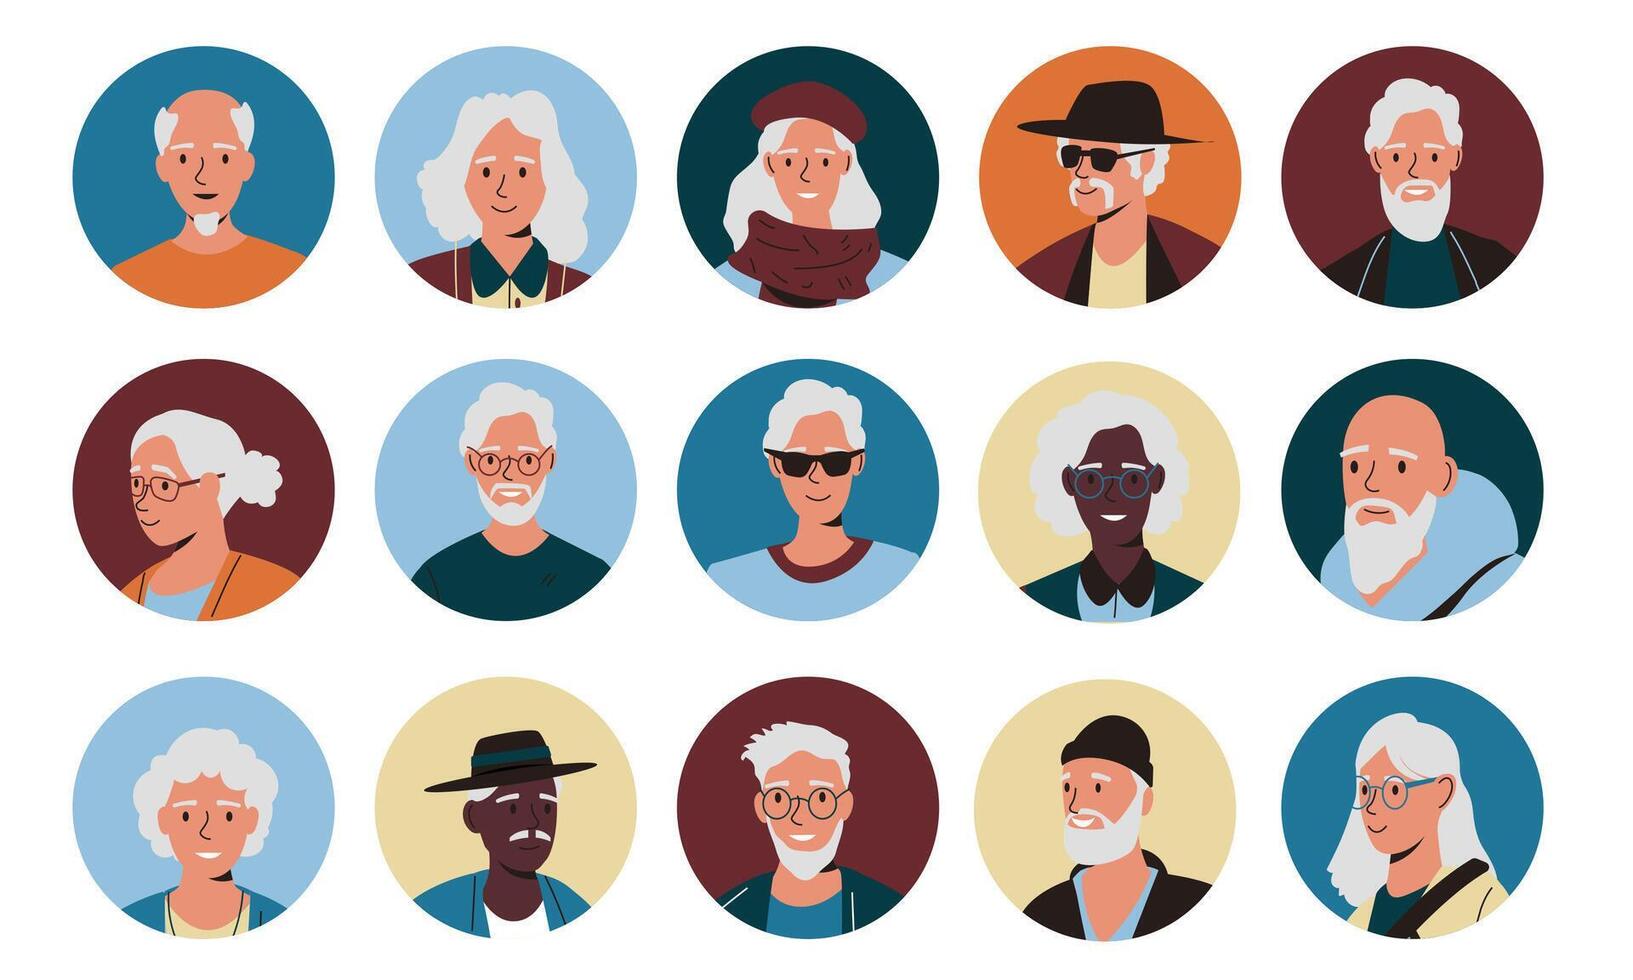 anziano persone avatar. cartone animato più vecchio personaggi il giro icone, contento anziano uomini donne facce, pensionato ritratti per sociale media. vettore isolato impostato